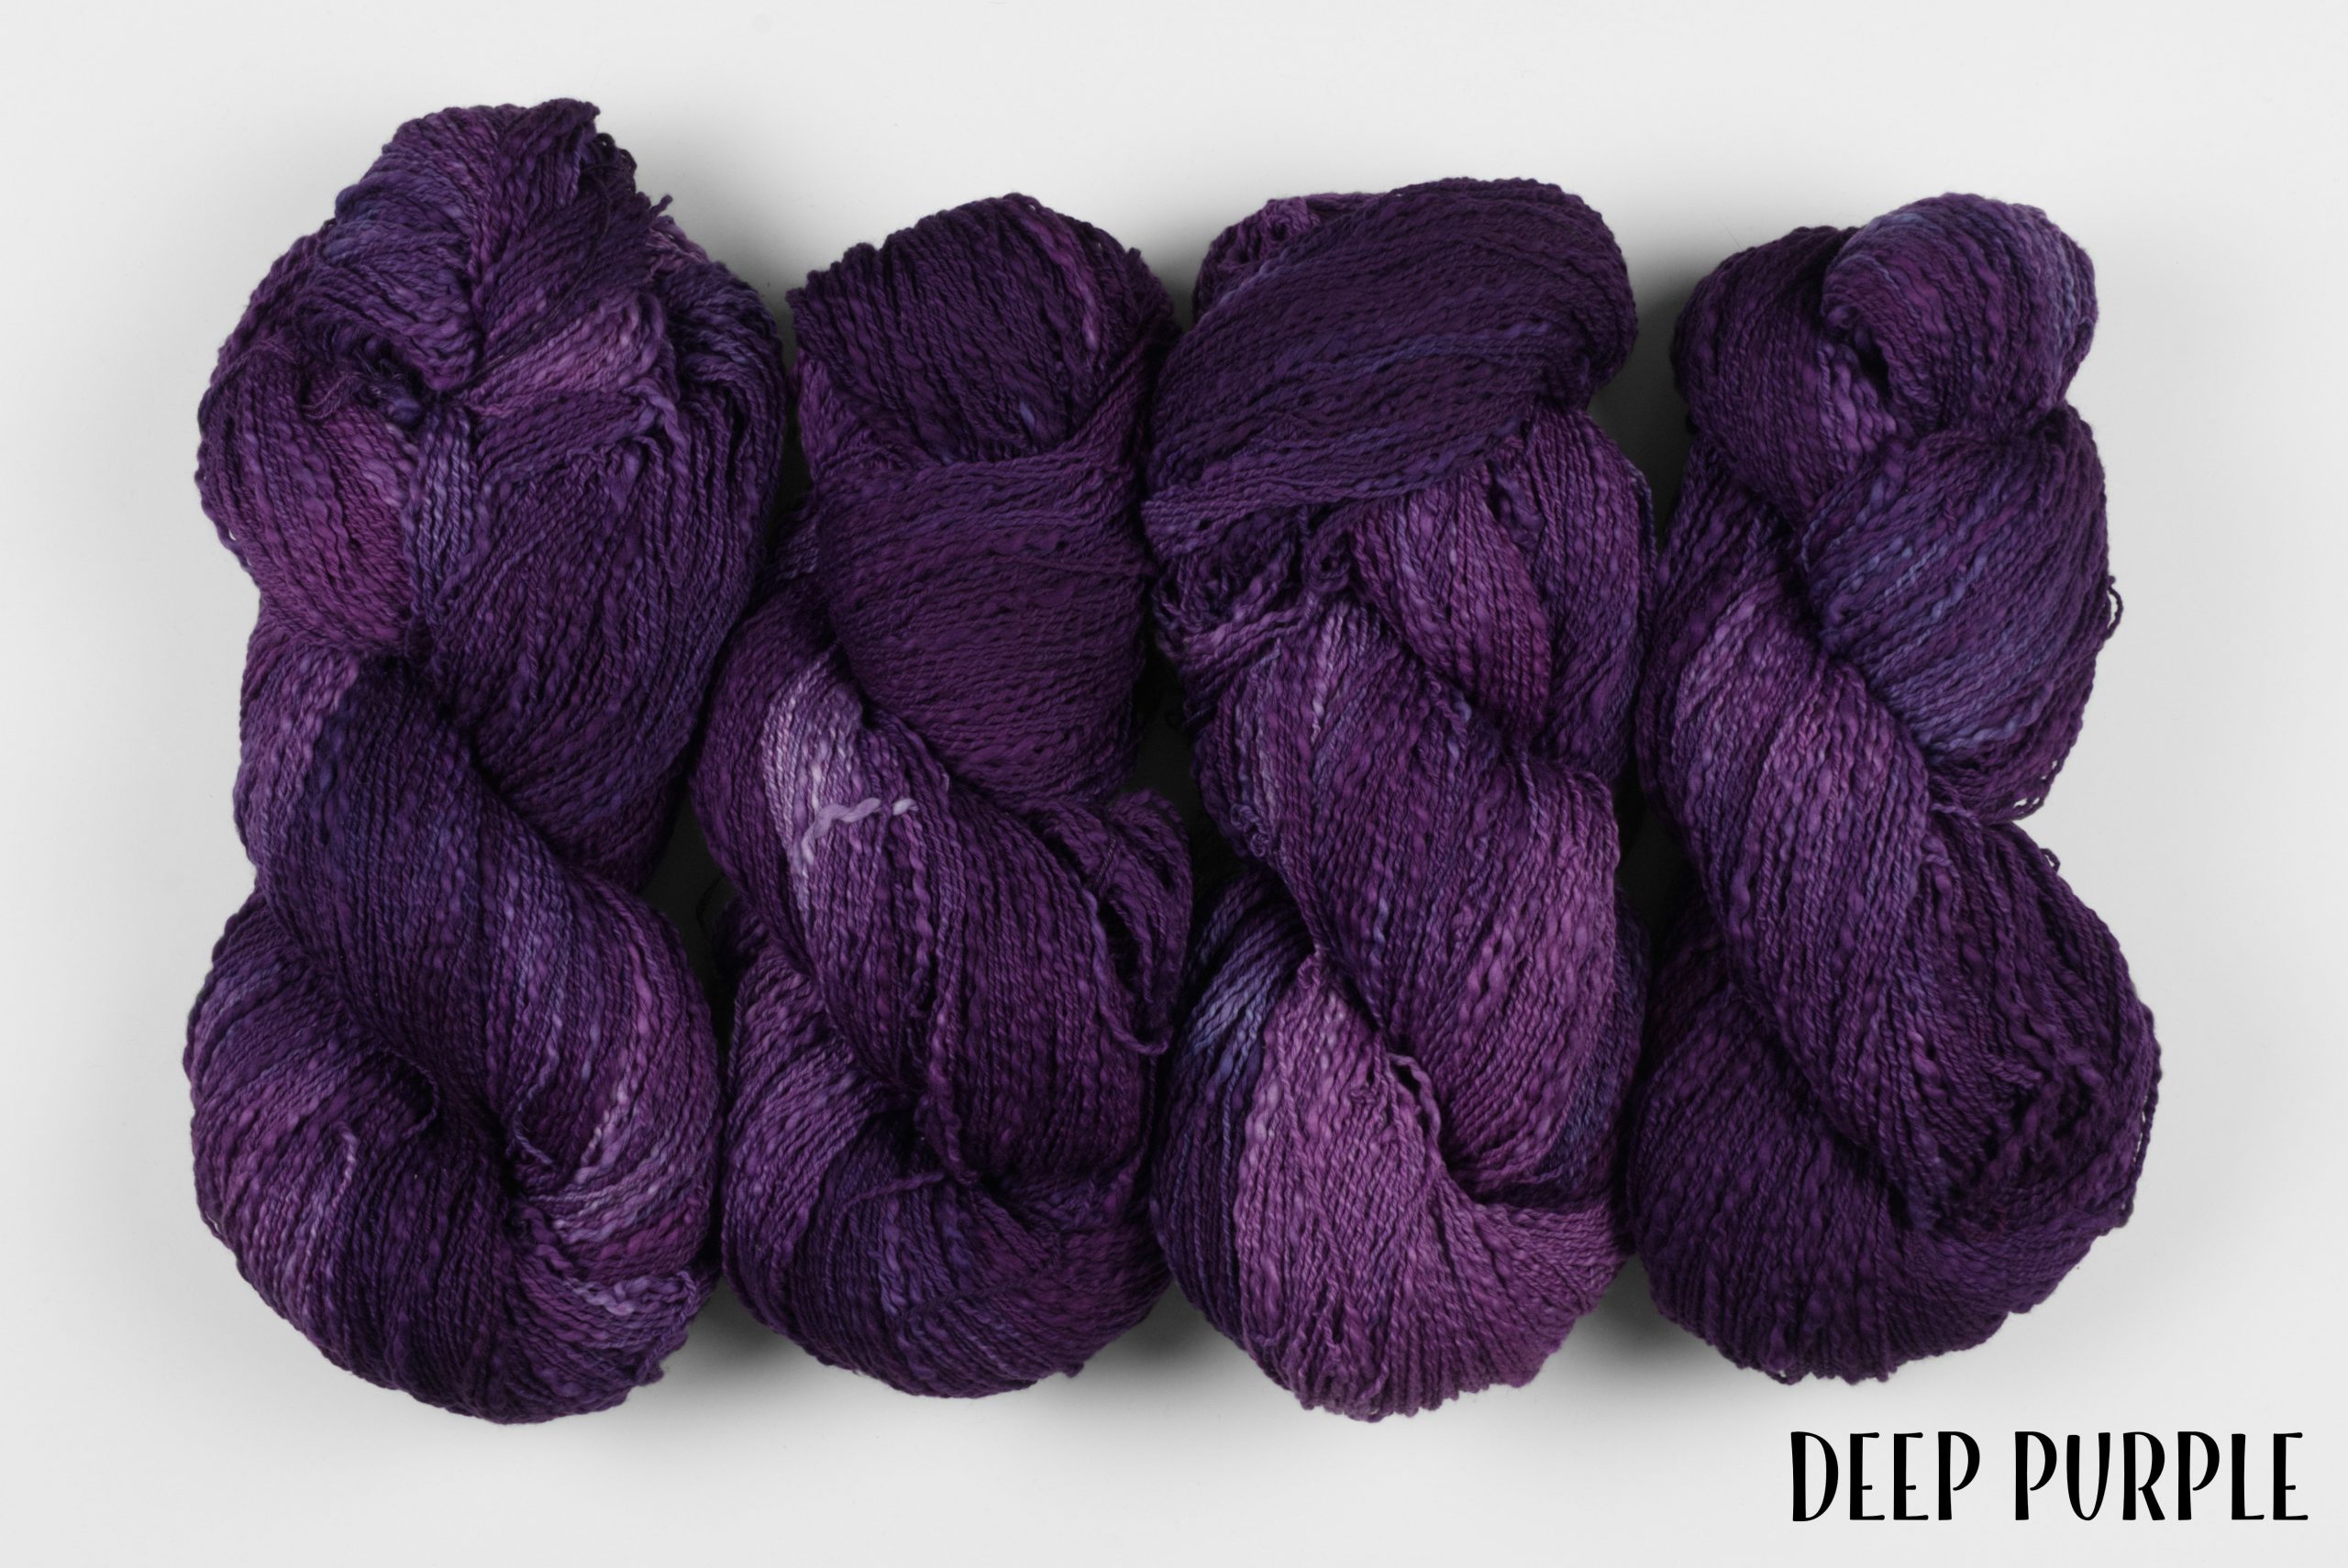 Yarn skeins dyed Deep Purple